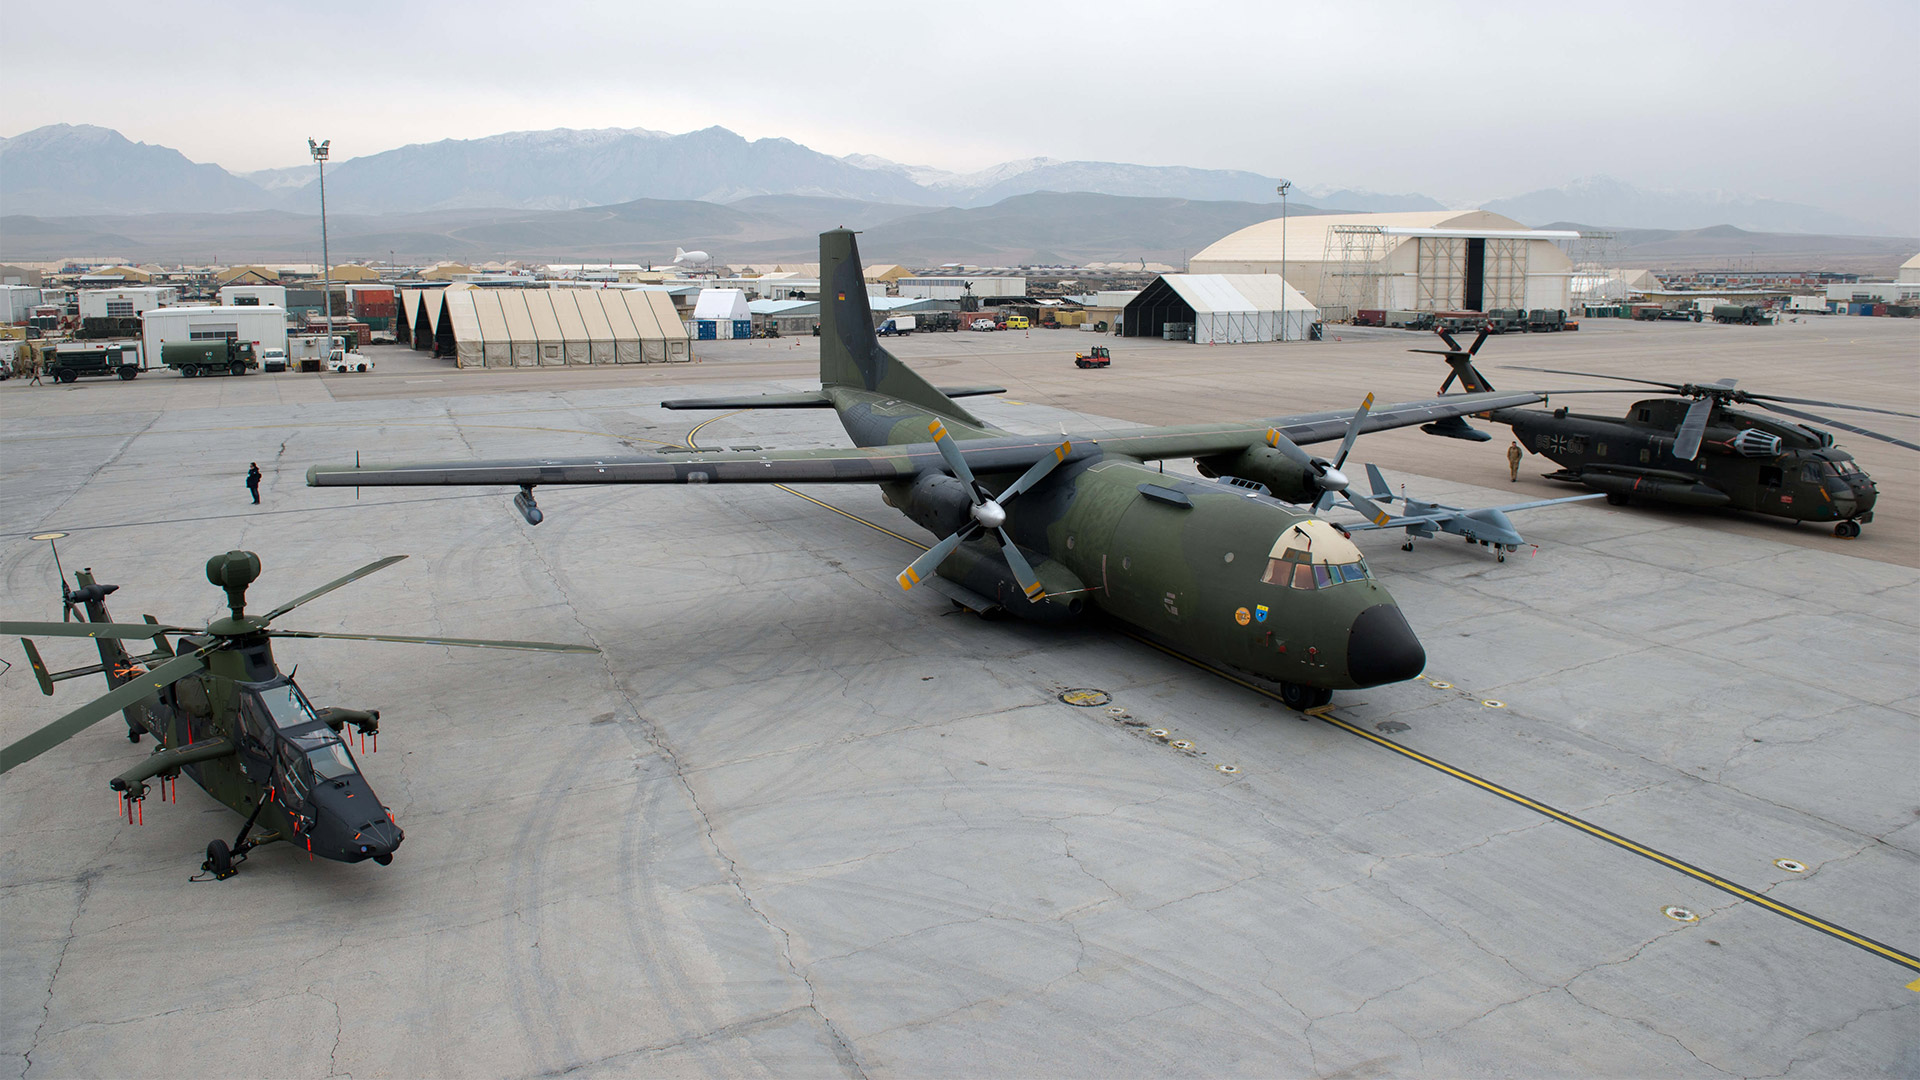 Bundeswehrflugzeuge auf dem Flughafen Mazar-i-Sharif, Afghanistan | picture alliance / dpa